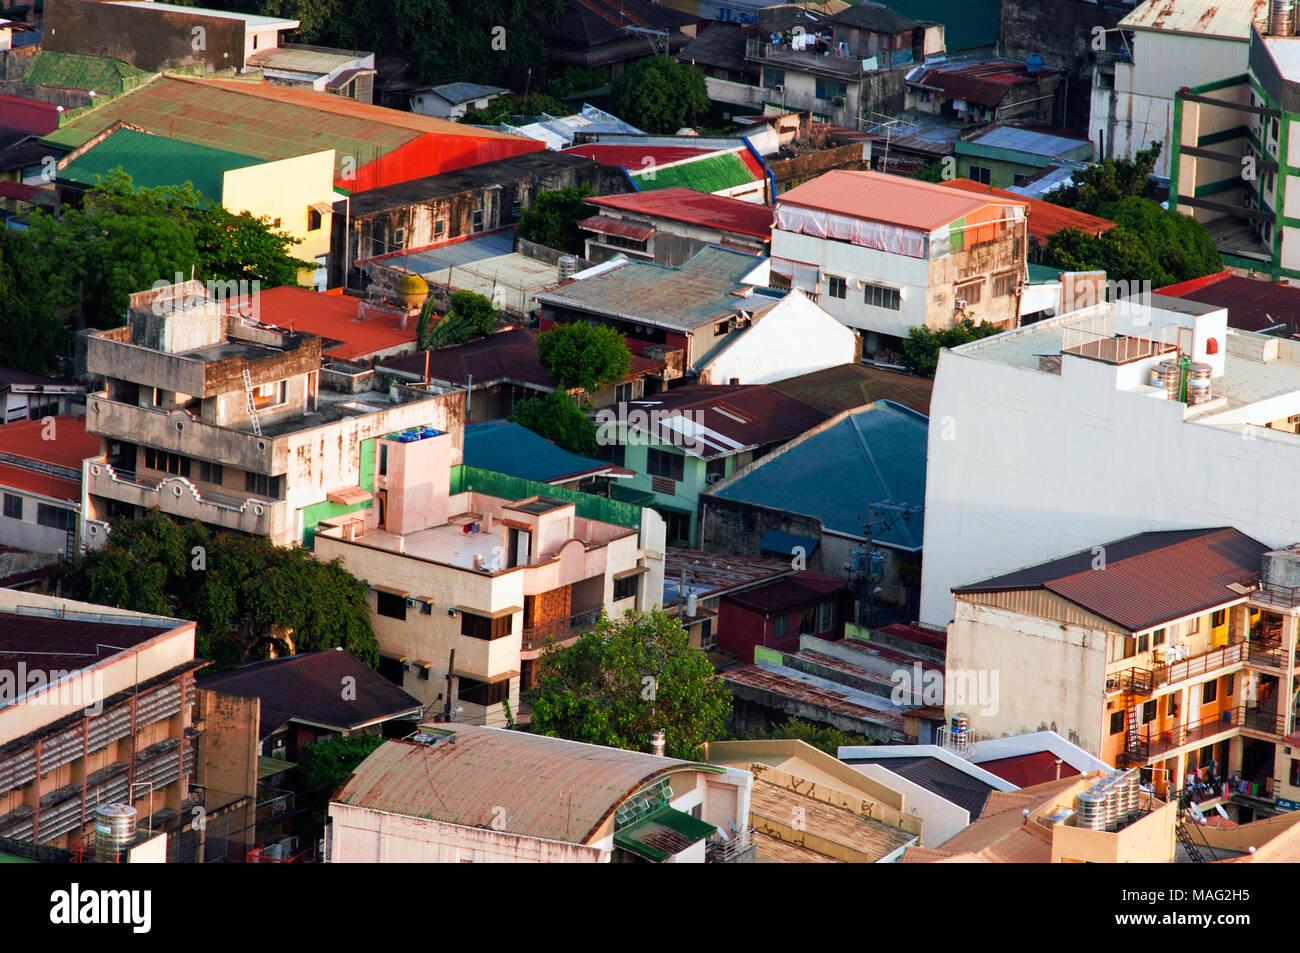 Vista aérea de la ciudad de Cebu mirando al noreste, con edificios de baja altura y viviendas, Filipinas Foto de stock